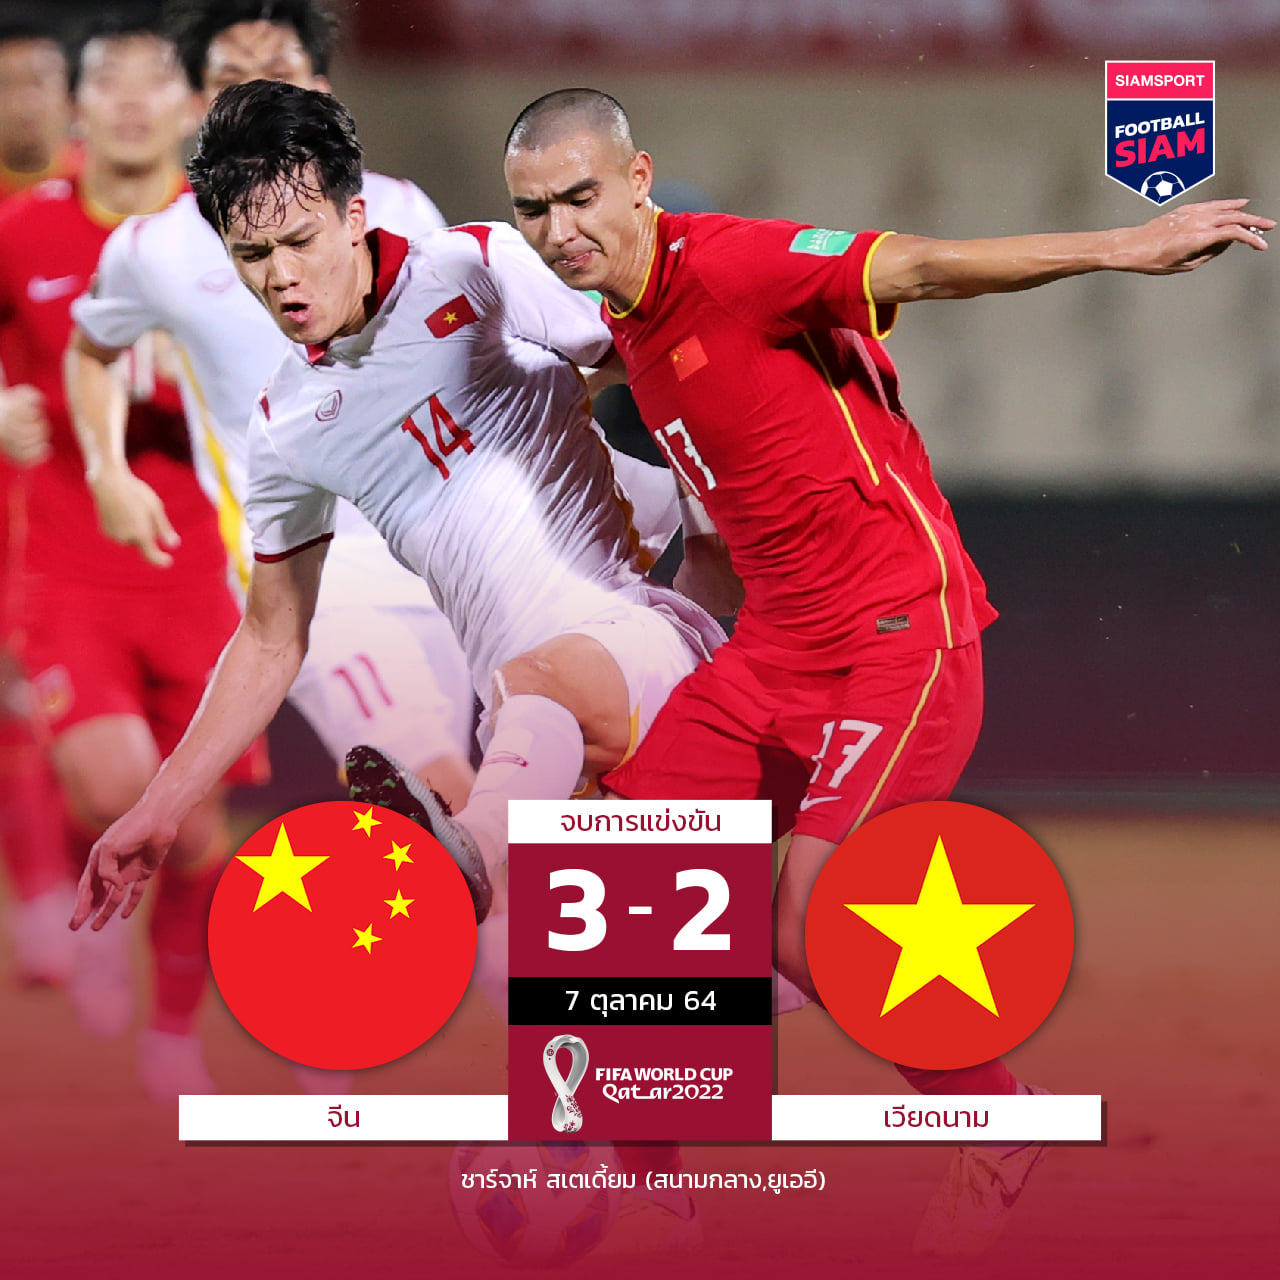 Hình ảnh được trang Facebook của tờ Siam Sport đăng tải về kết quả trận đấu giữa ĐT Việt Nam và ĐT Trung Quốc hôm 8/10.